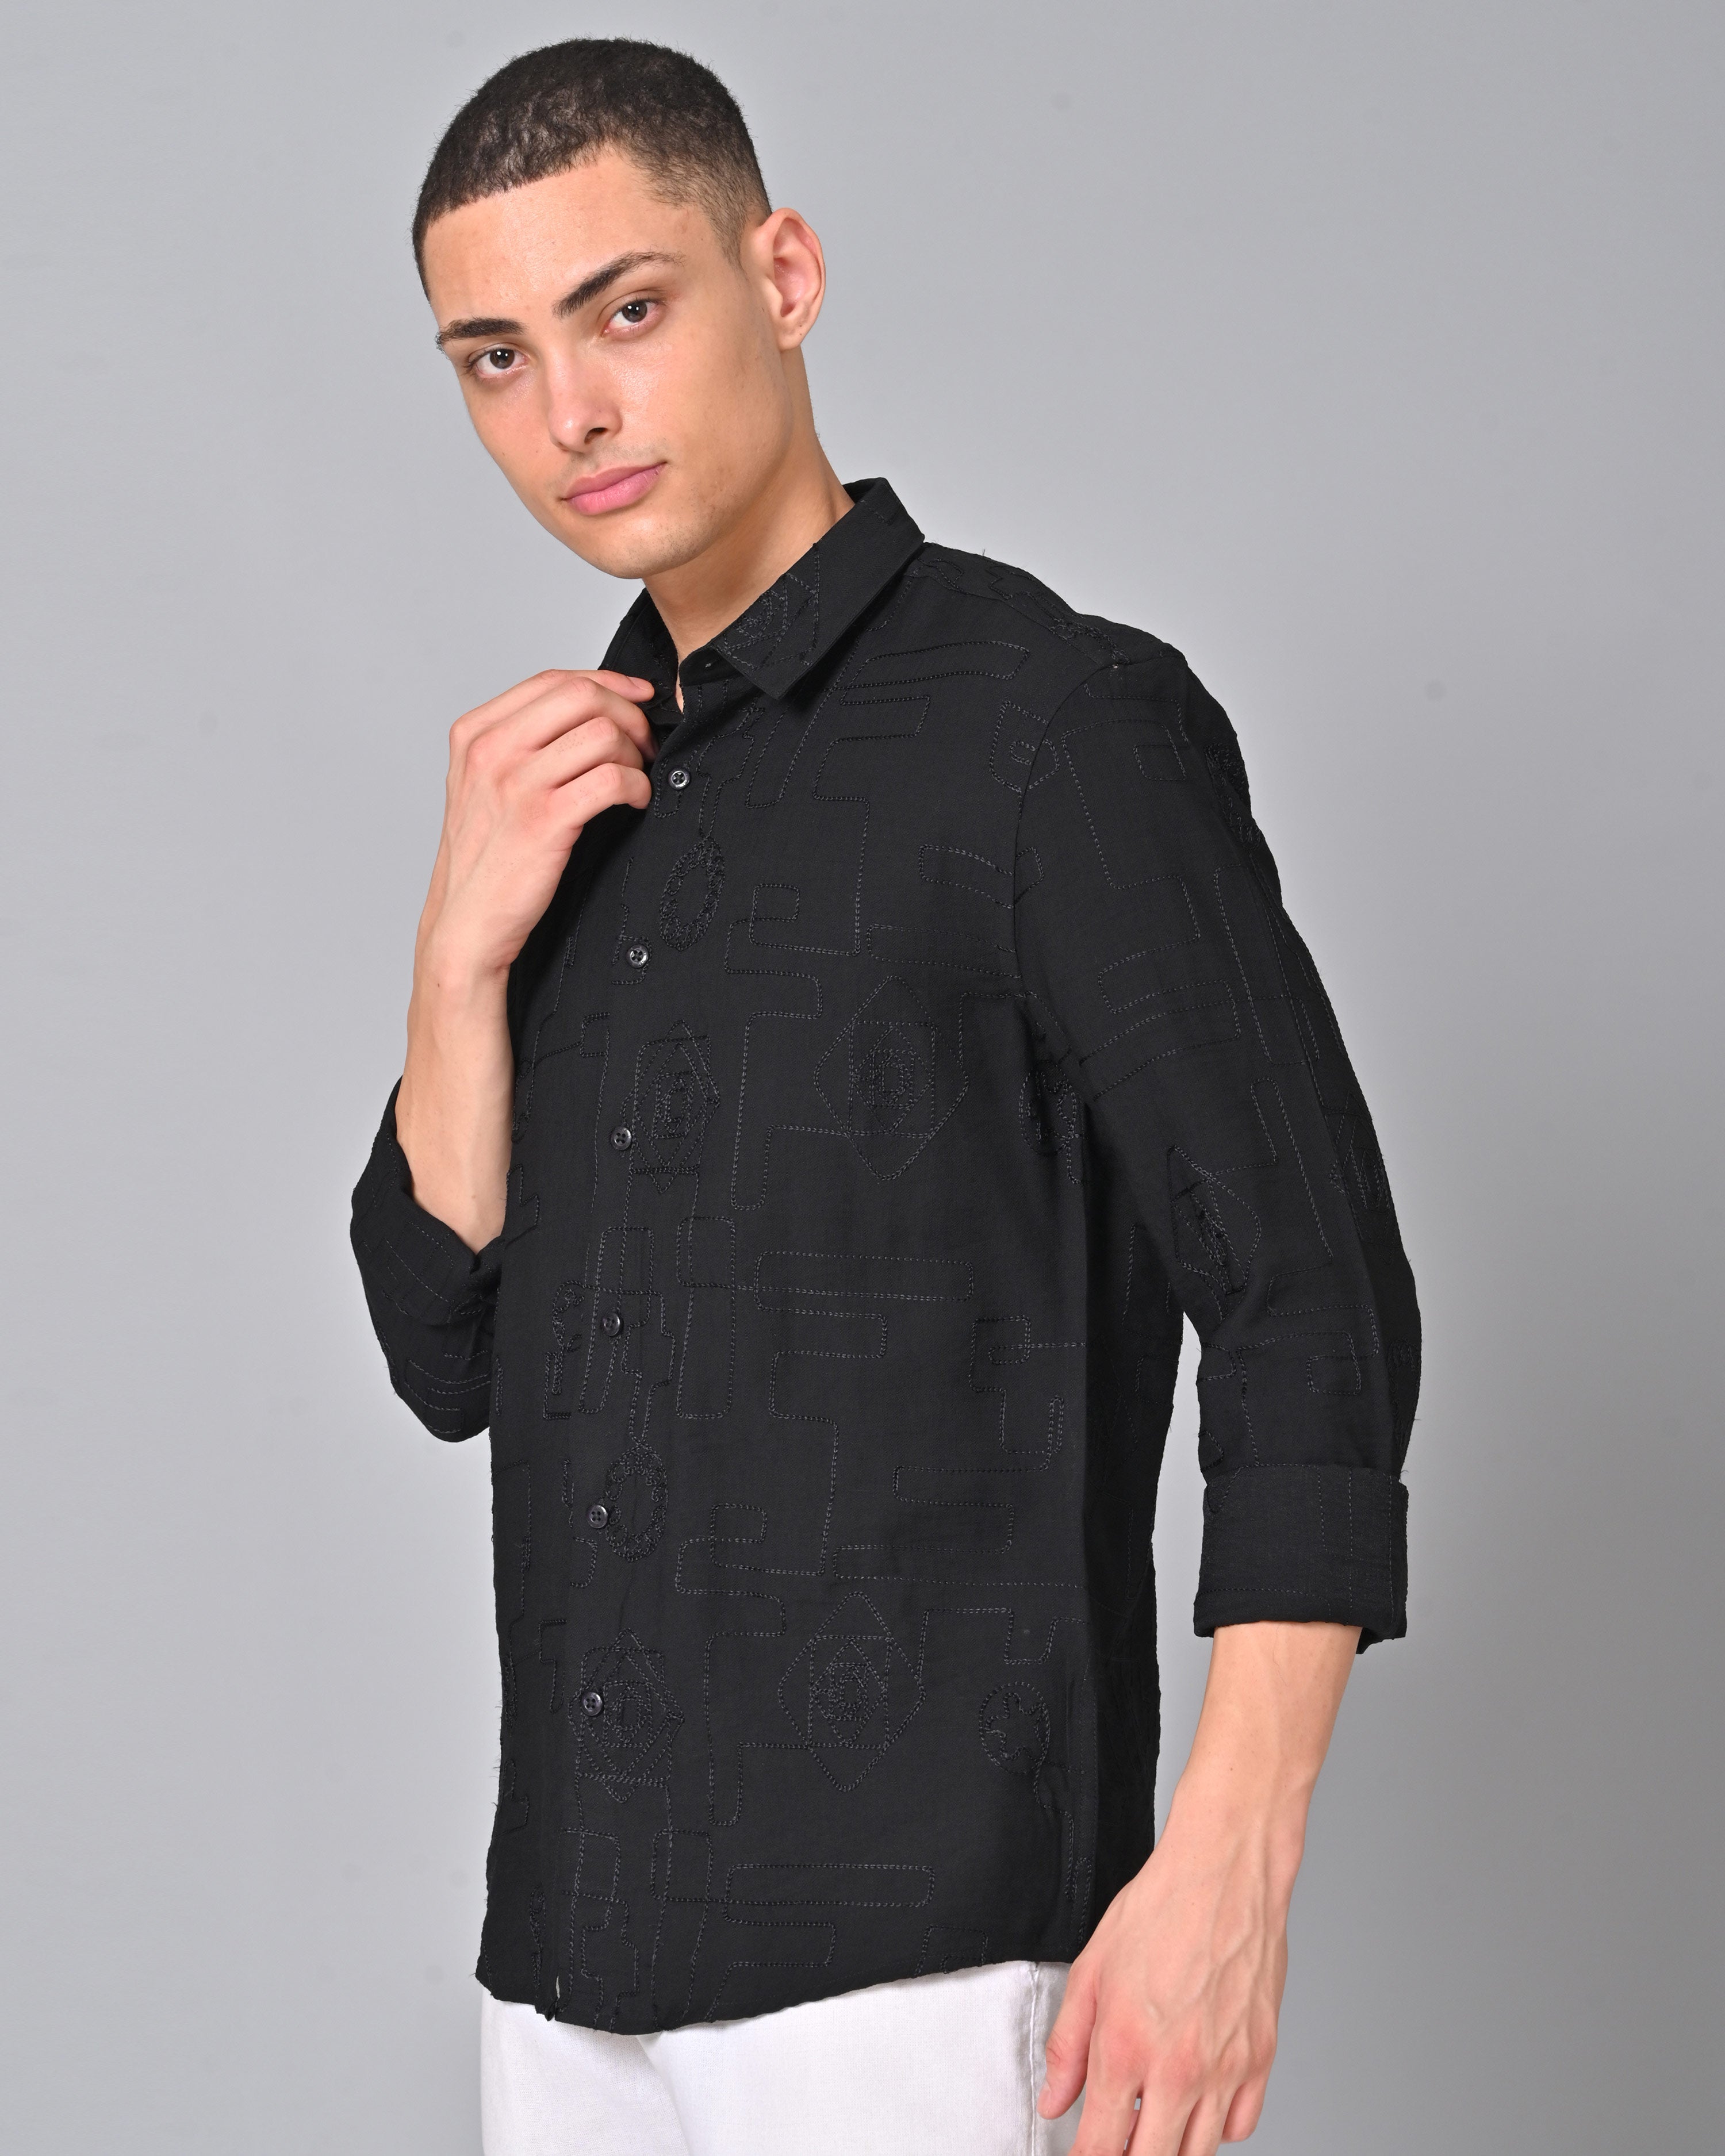 Men's Embroidered Black Full Sleeve Shirt Online